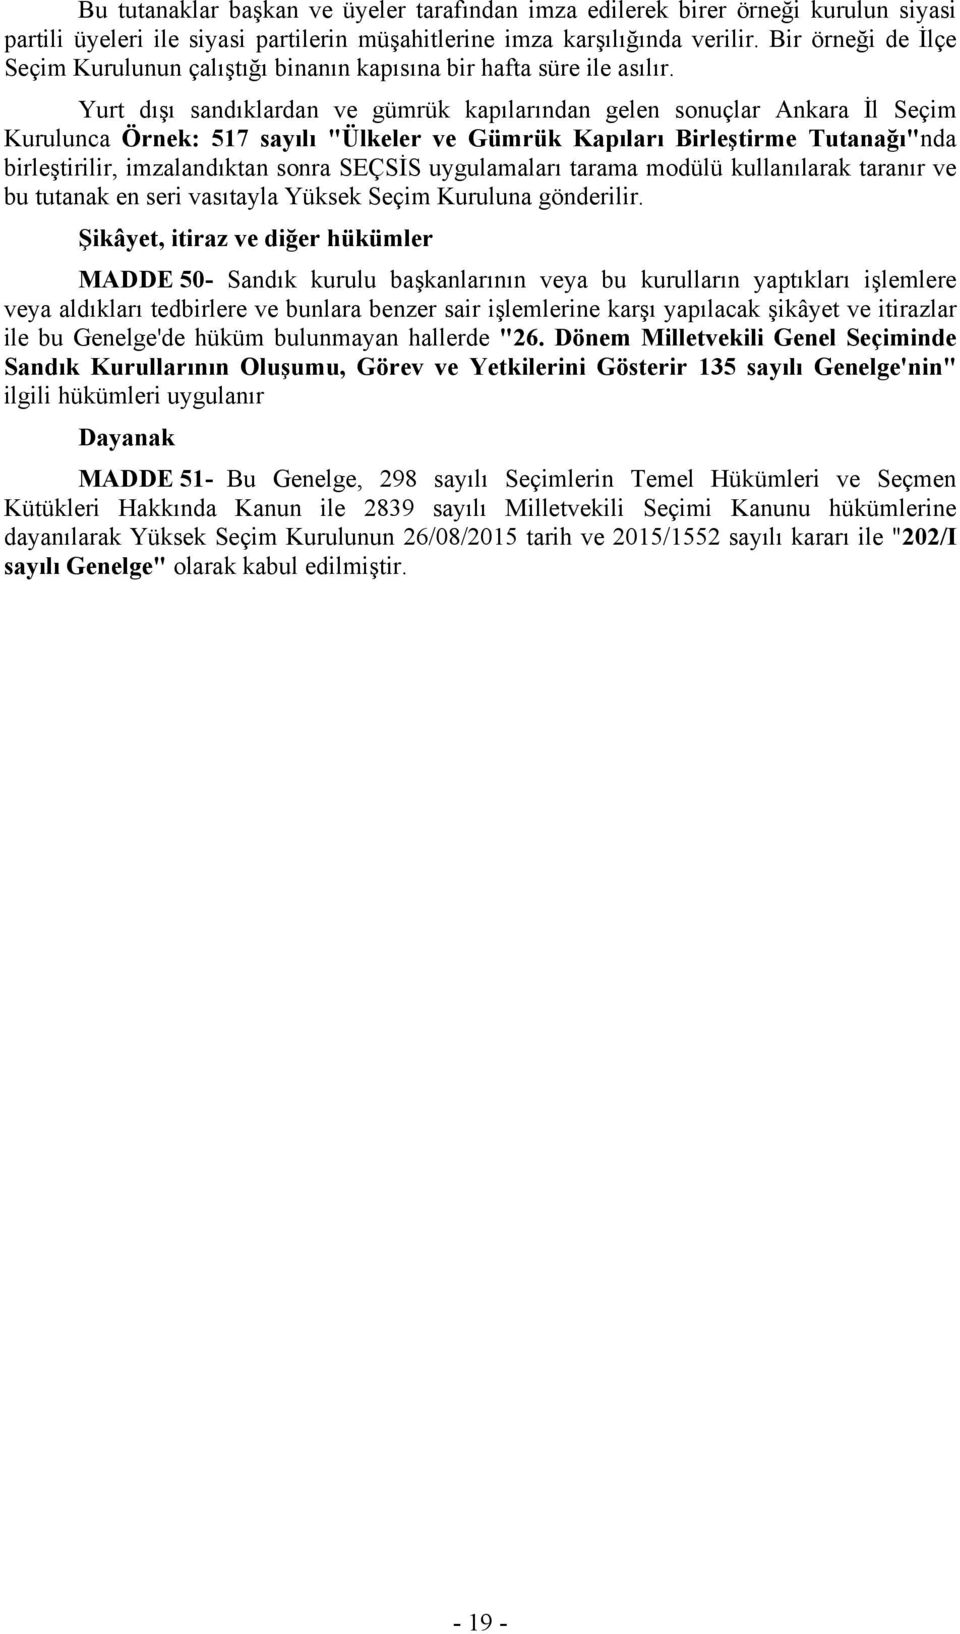 Yurt dışı sandıklardan ve gümrük kapılarından gelen sonuçlar Ankara İl Seçim Kurulunca Örnek: 517 sayılı "Ülkeler ve Gümrük Kapıları Birleştirme Tutanağı"nda birleştirilir, imzalandıktan sonra SEÇSİS